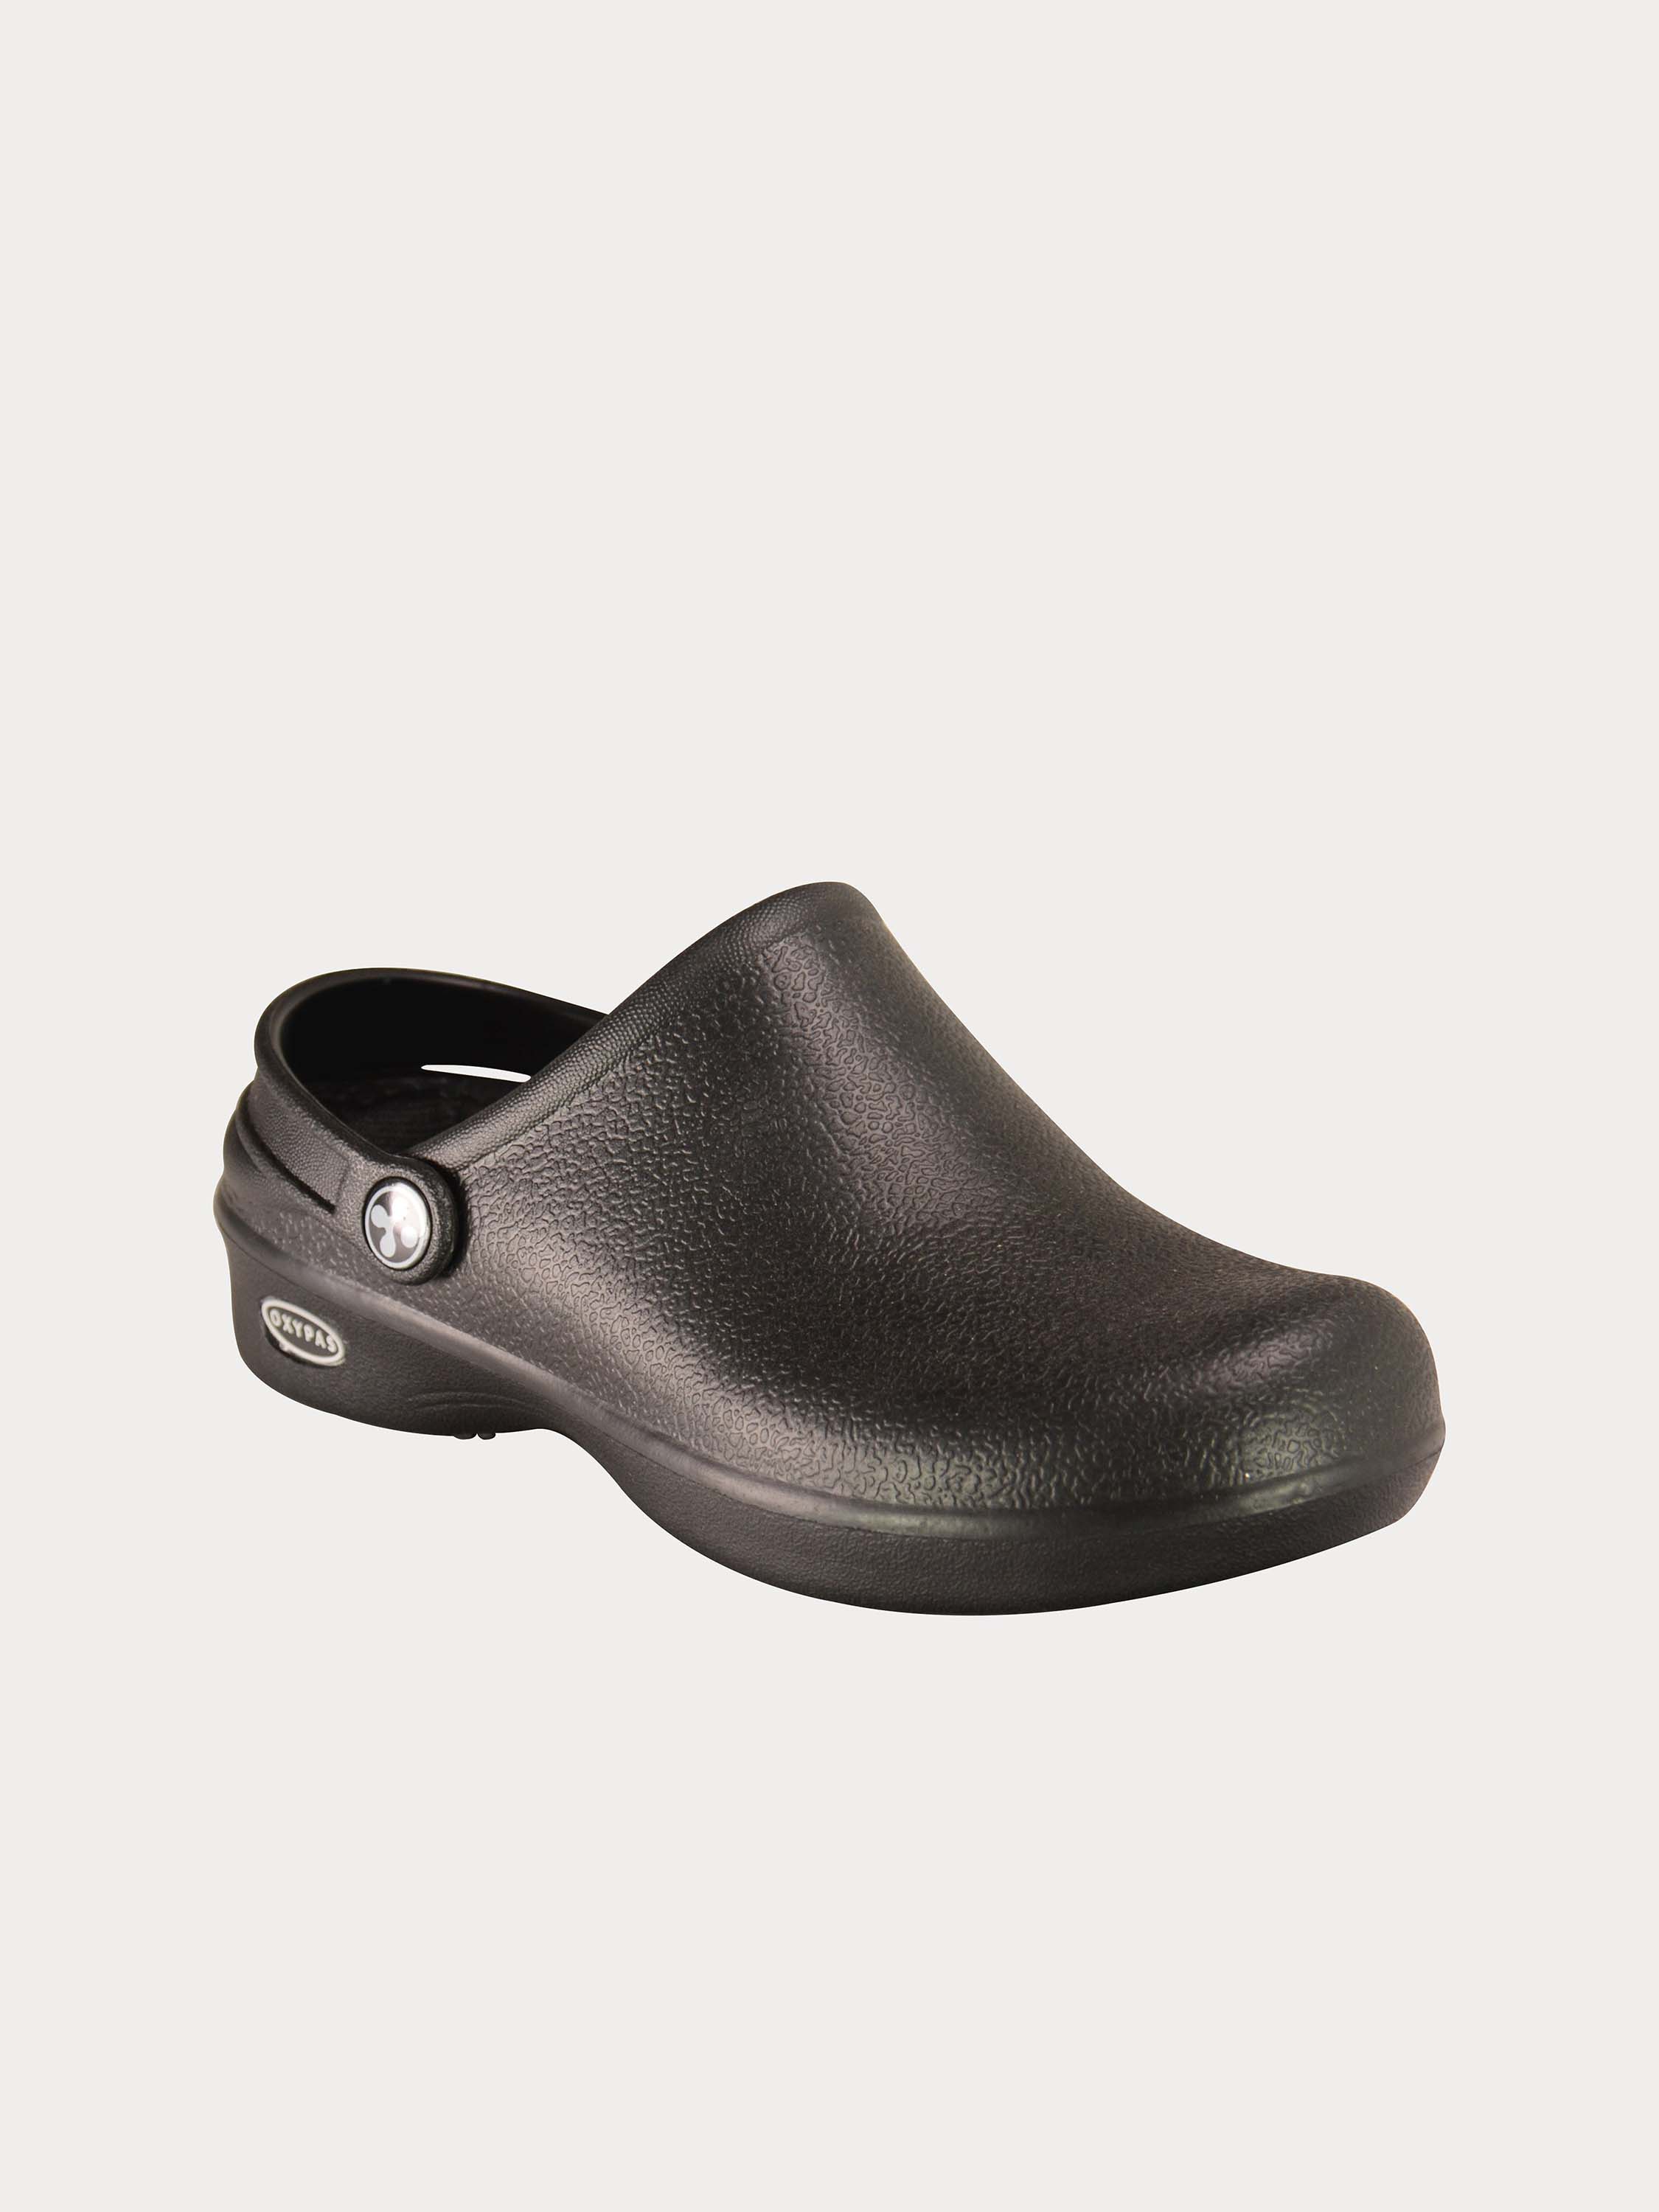 Oxypas Men's Bestlight 1 Safety Mule Shoes #color_Black